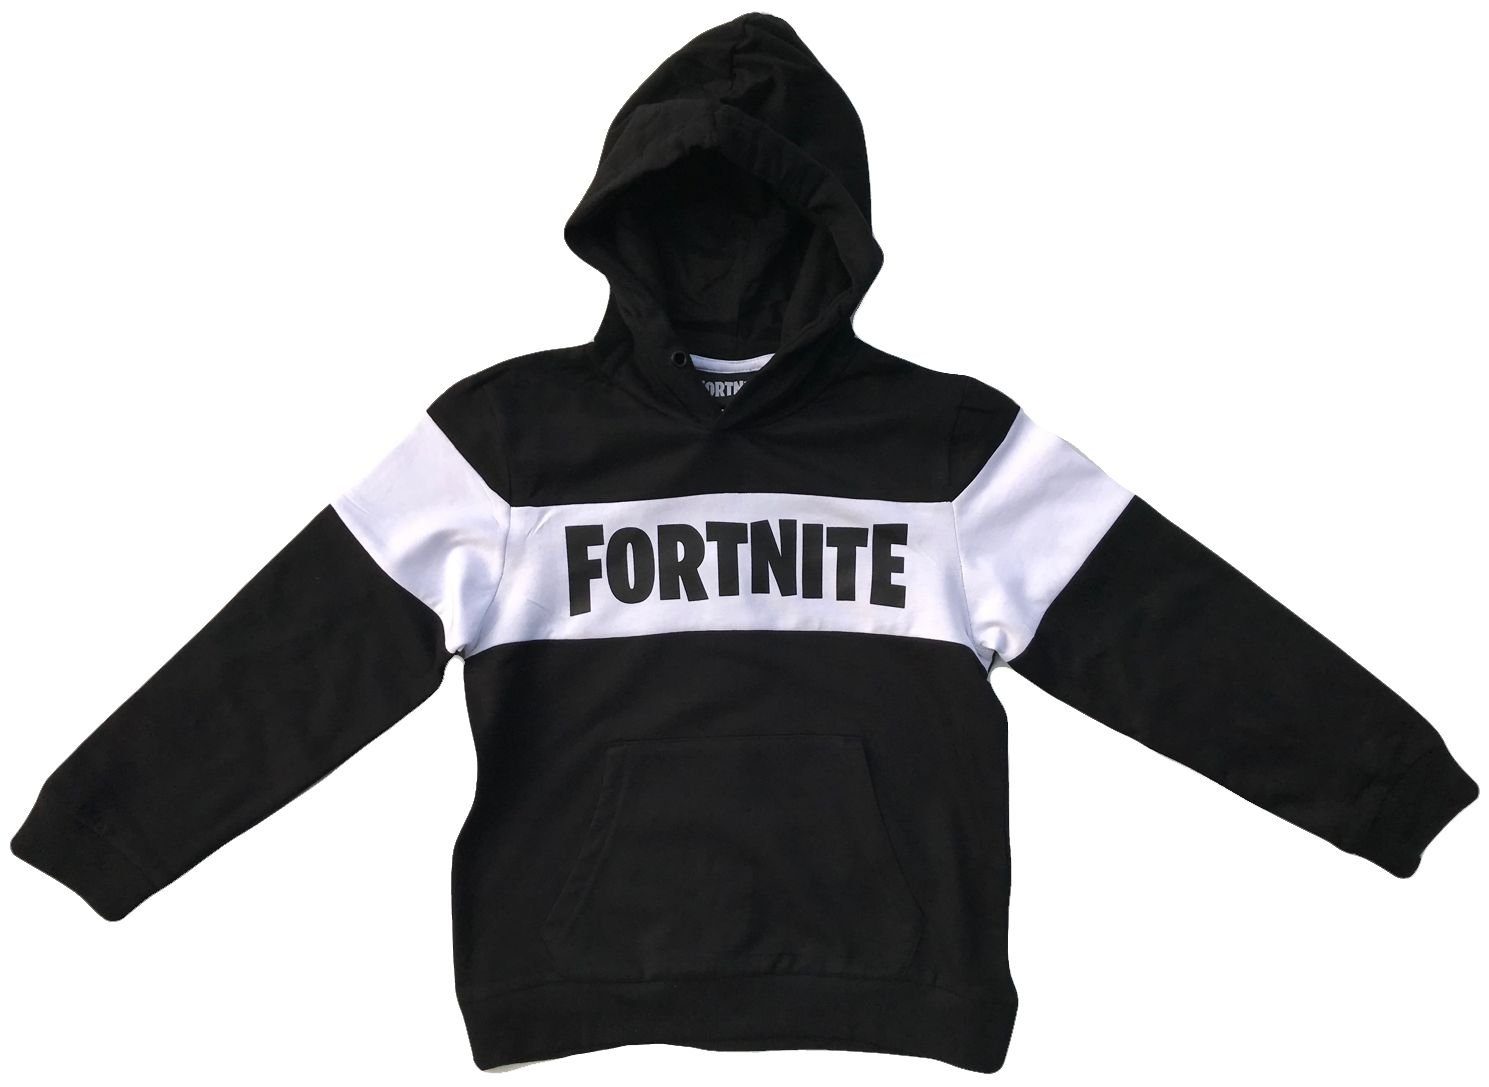 Fortnite Hoodie Epic Games FORTNITE S Jugendliche Sweatshirt XL Erwachsene + Schwarz L Gr. Kapuze M Kapuzensweatshirt Hoodie - Weiß mit